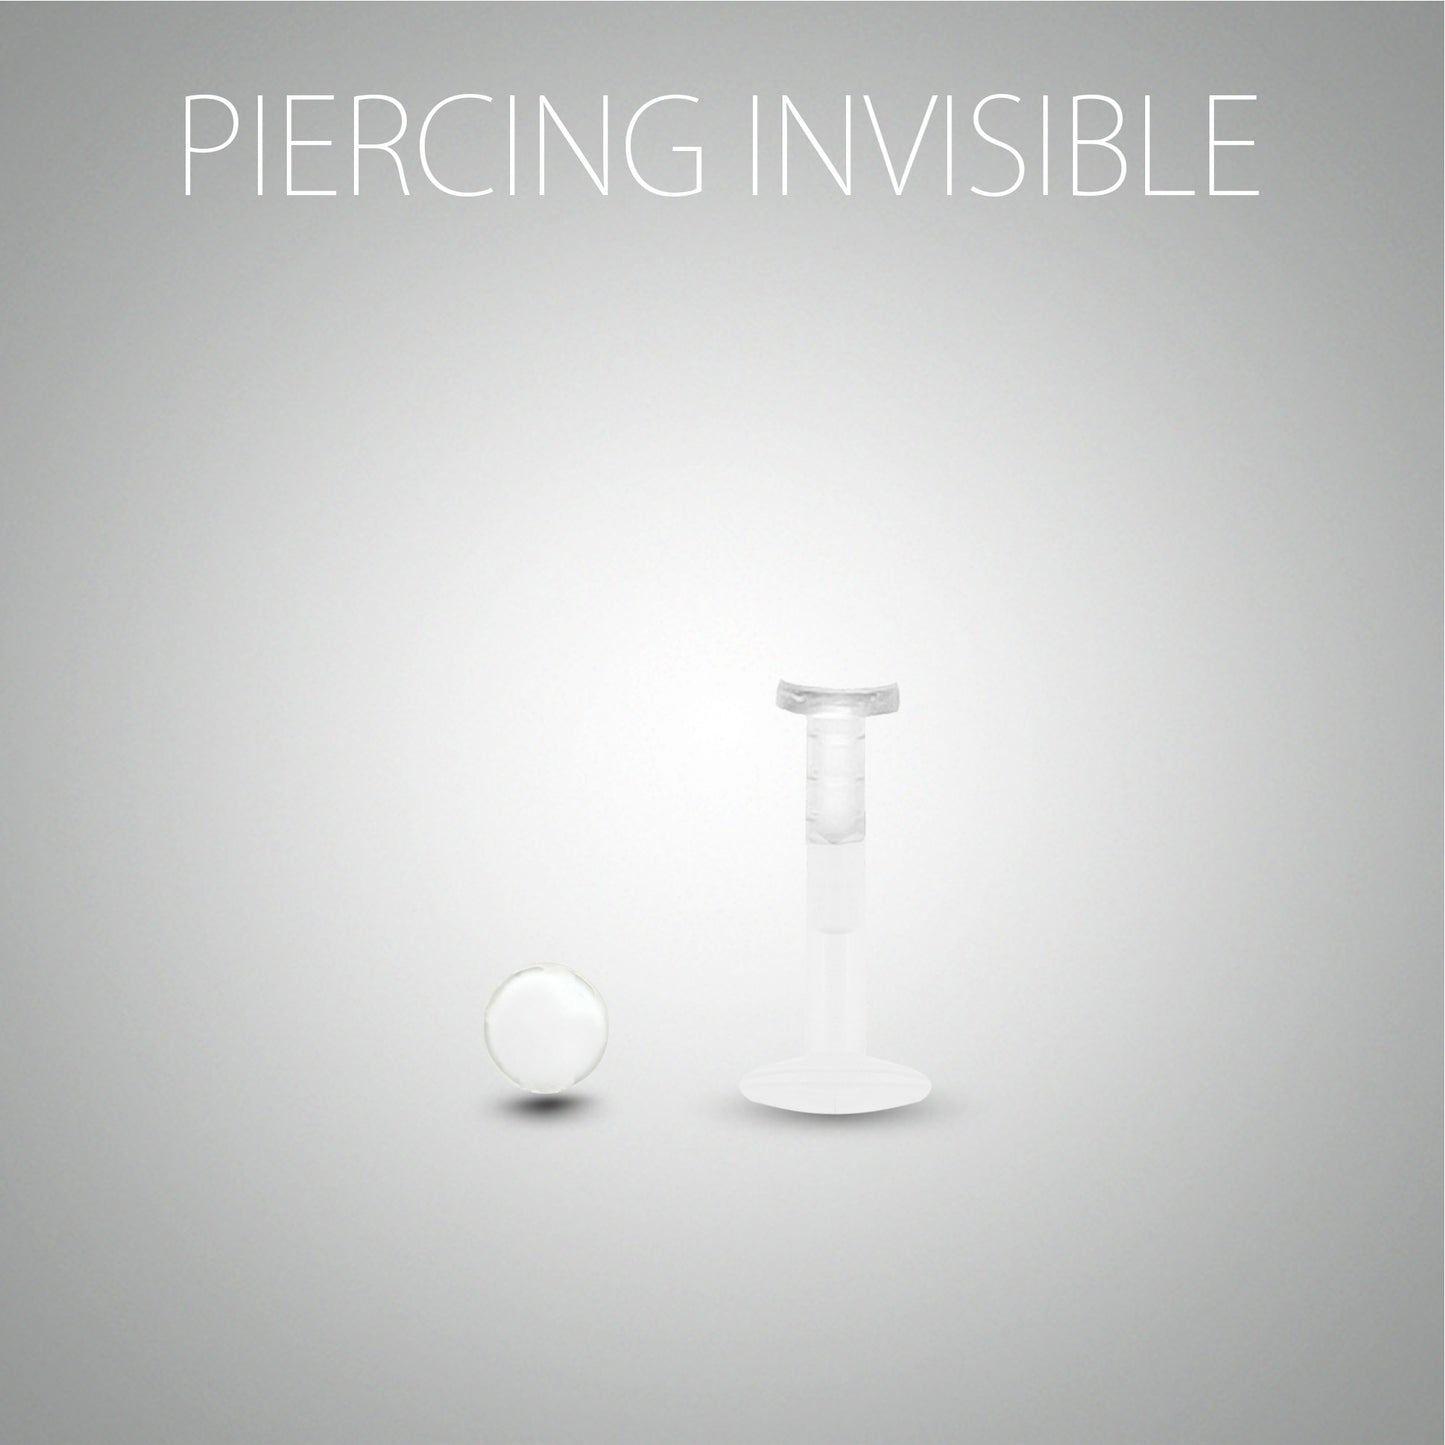 Piercing de conch invisible